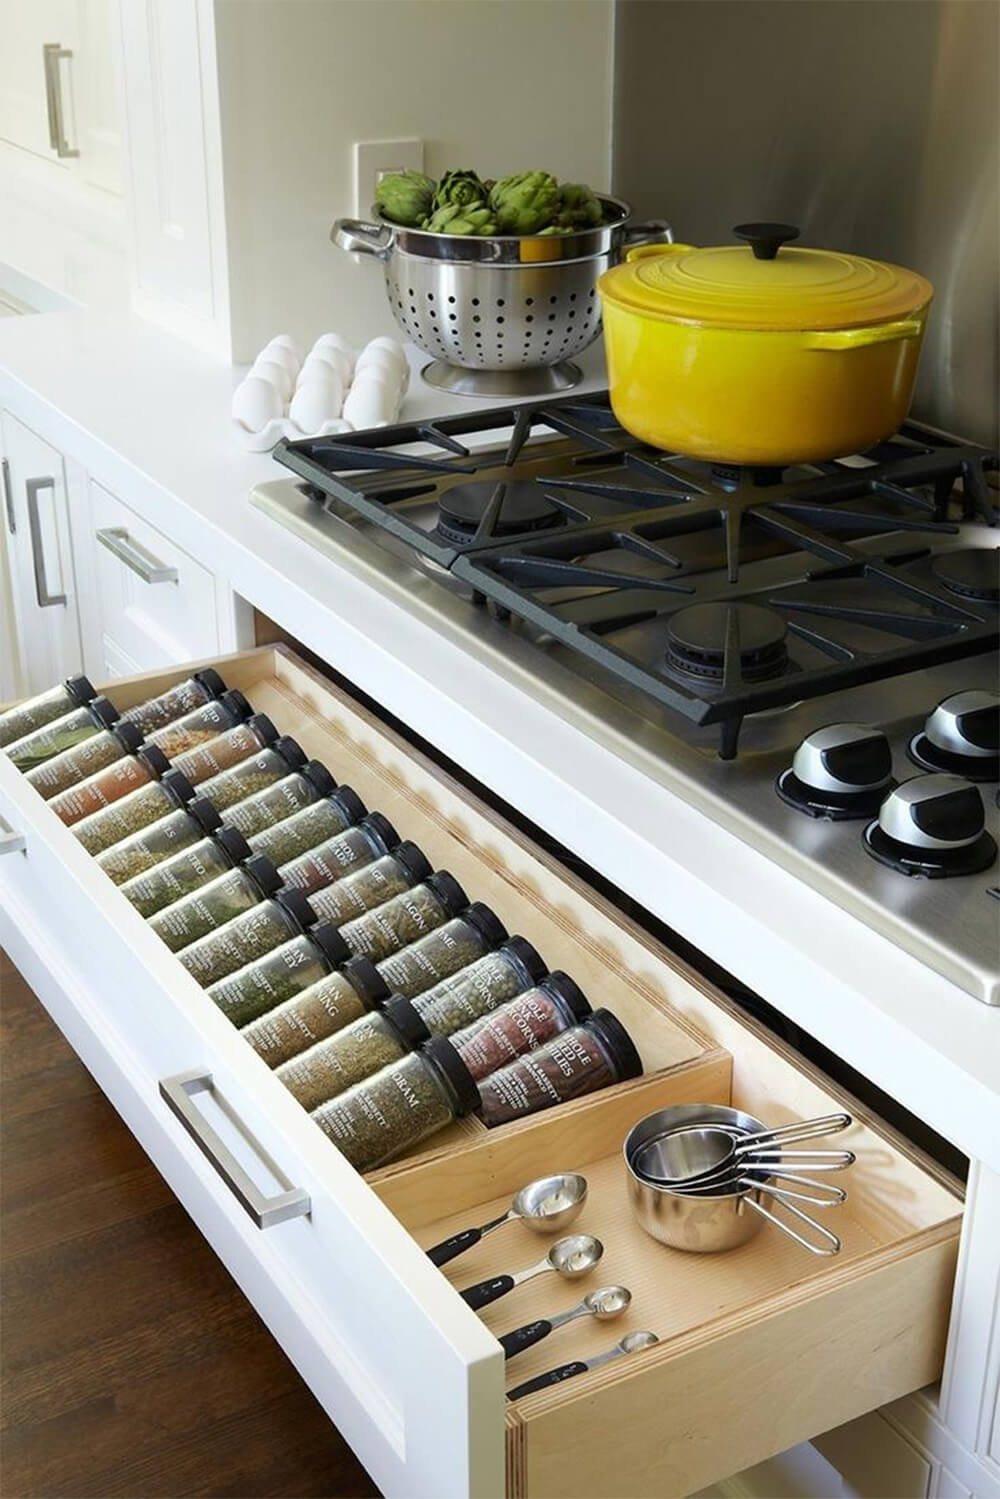 Căn hộ thiết kế với hệ tủ bếp tiện nghi hiện đại sẽ giúp tối đa hóa không gian sống nhỏ.